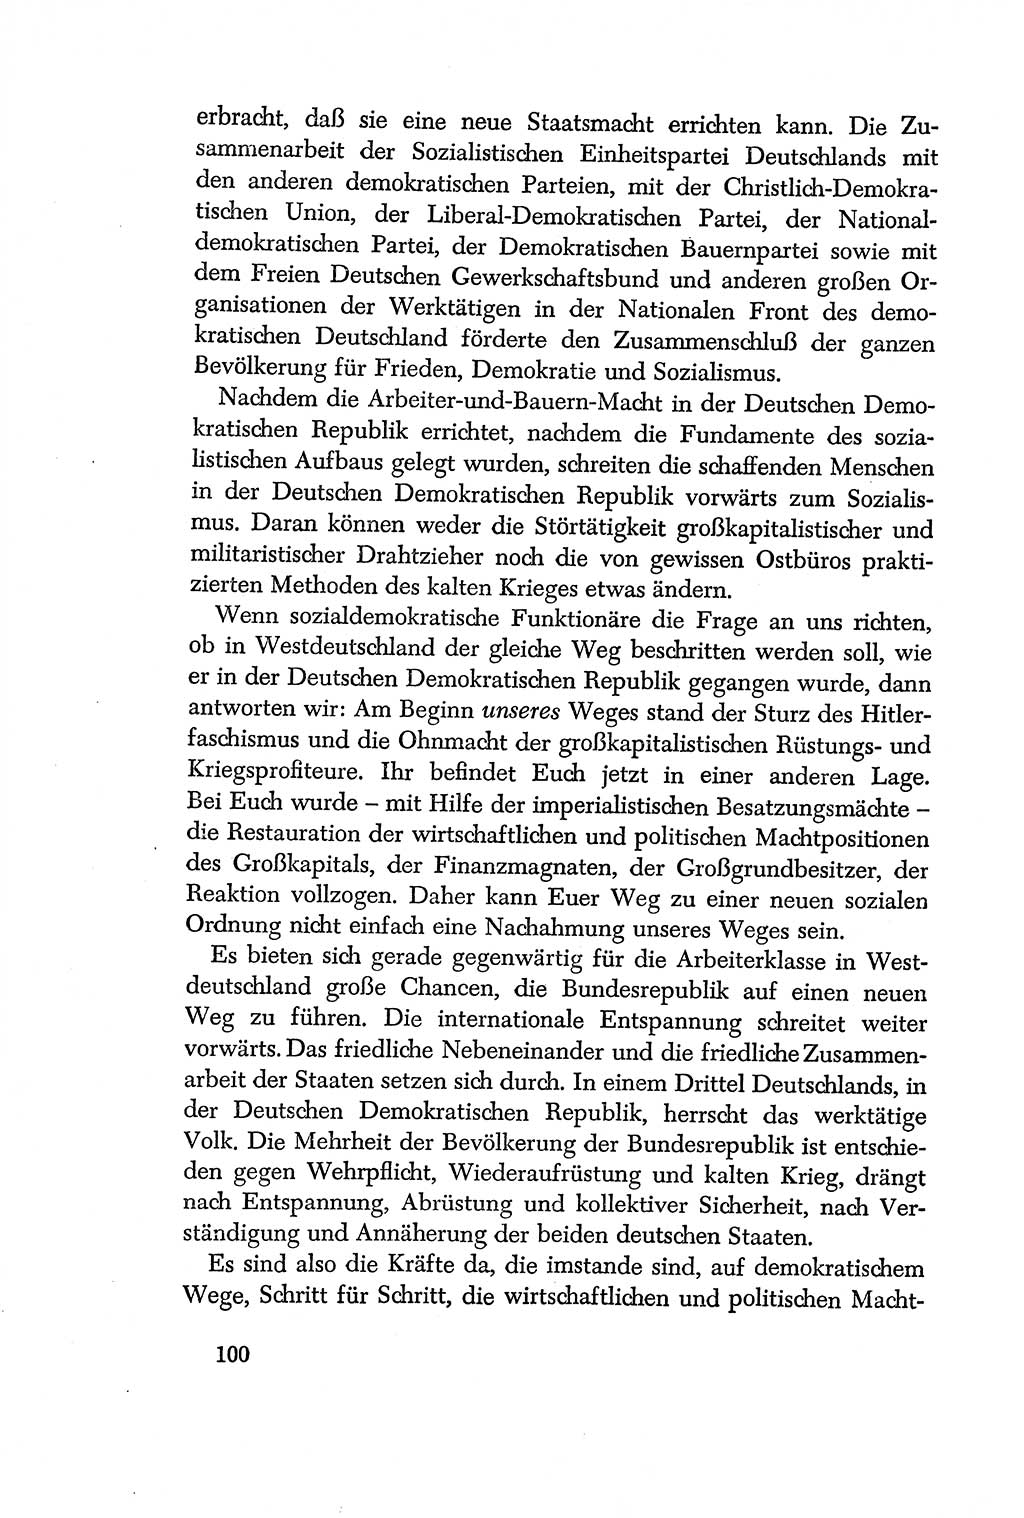 Dokumente der Sozialistischen Einheitspartei Deutschlands (SED) [Deutsche Demokratische Republik (DDR)] 1956-1957, Seite 100 (Dok. SED DDR 1956-1957, S. 100)